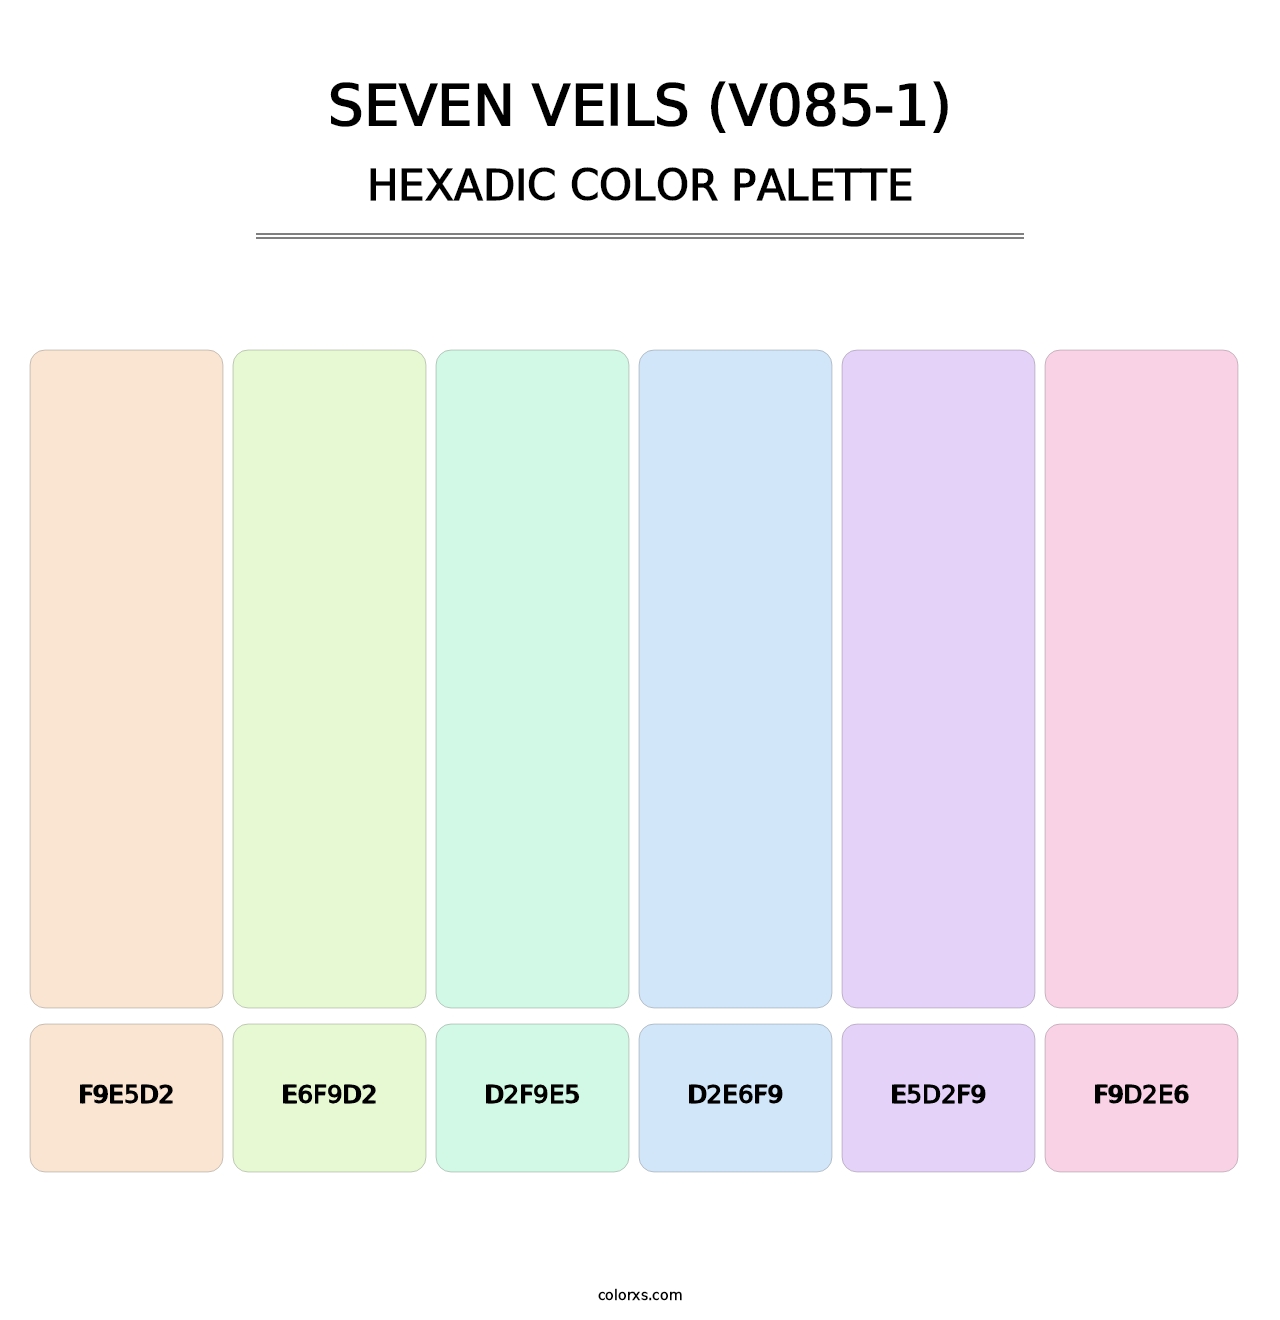 Seven Veils (V085-1) - Hexadic Color Palette